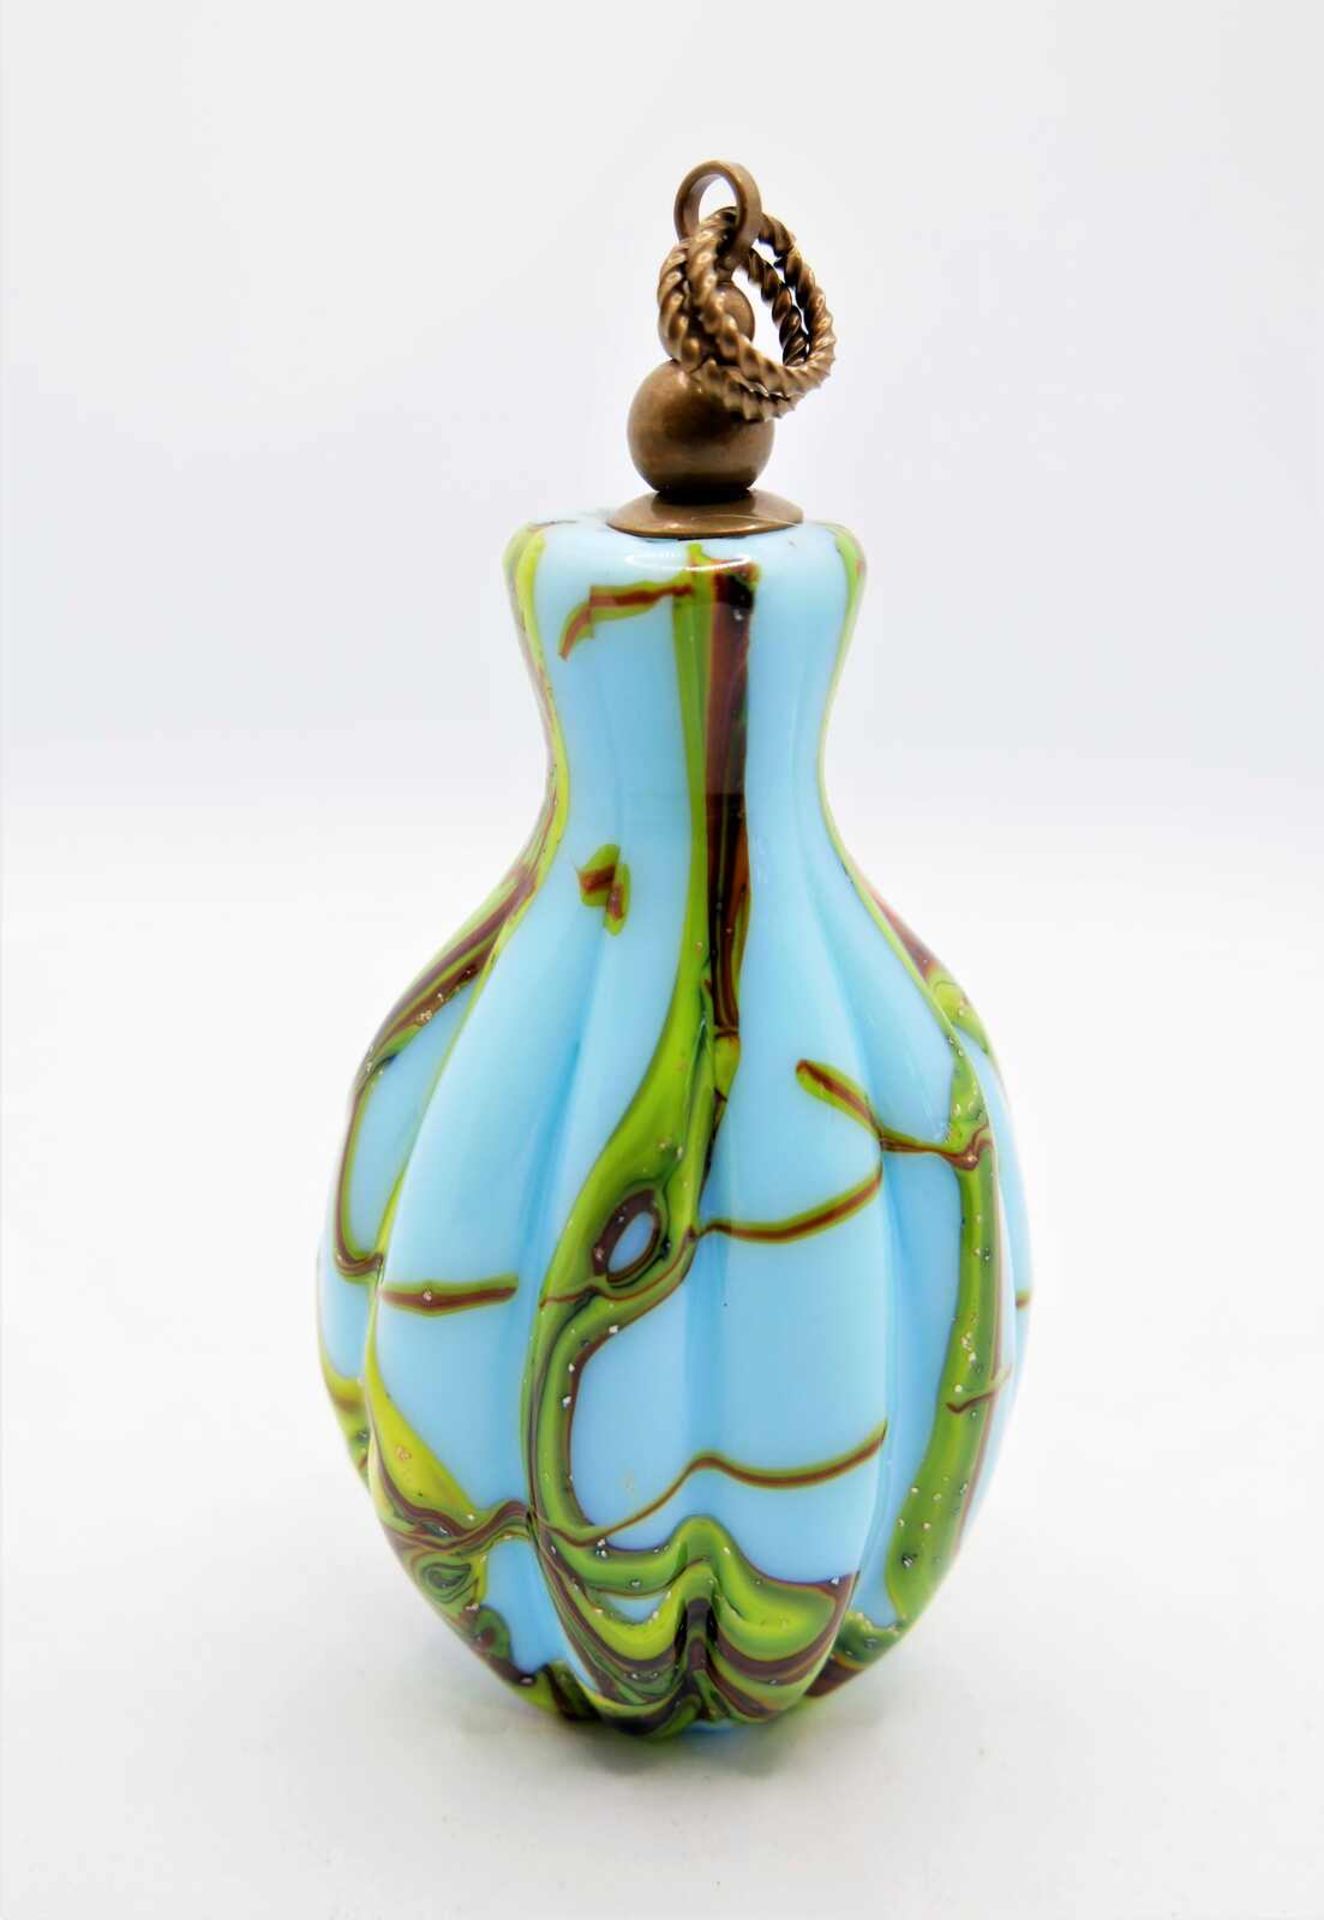 Schnupftabakflasche Glas aus Sammlung, Bixl, blau/grün/gelb/rot, mit Stöpsel. Bayrischer Wald. Höhe